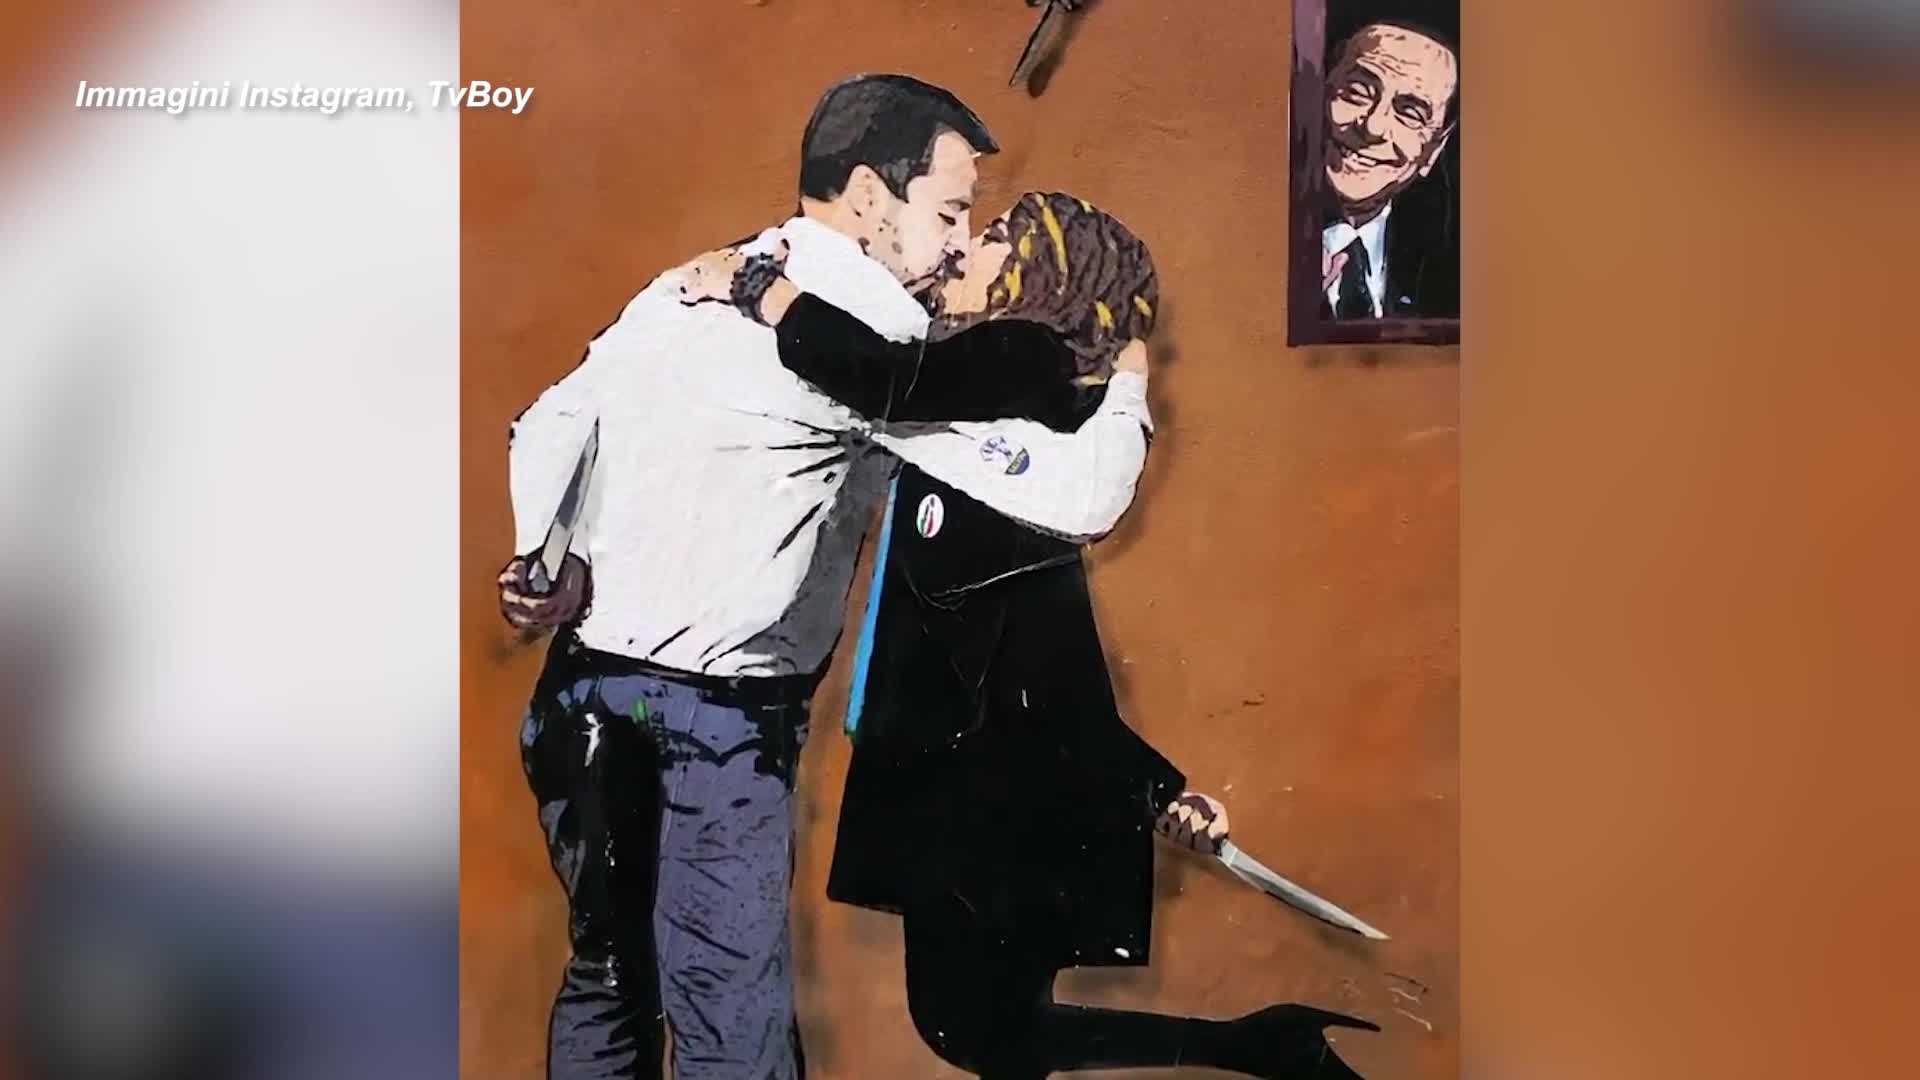 "Odi et Amo", Salvini e Meloni nel nuovo murale di Tvboy